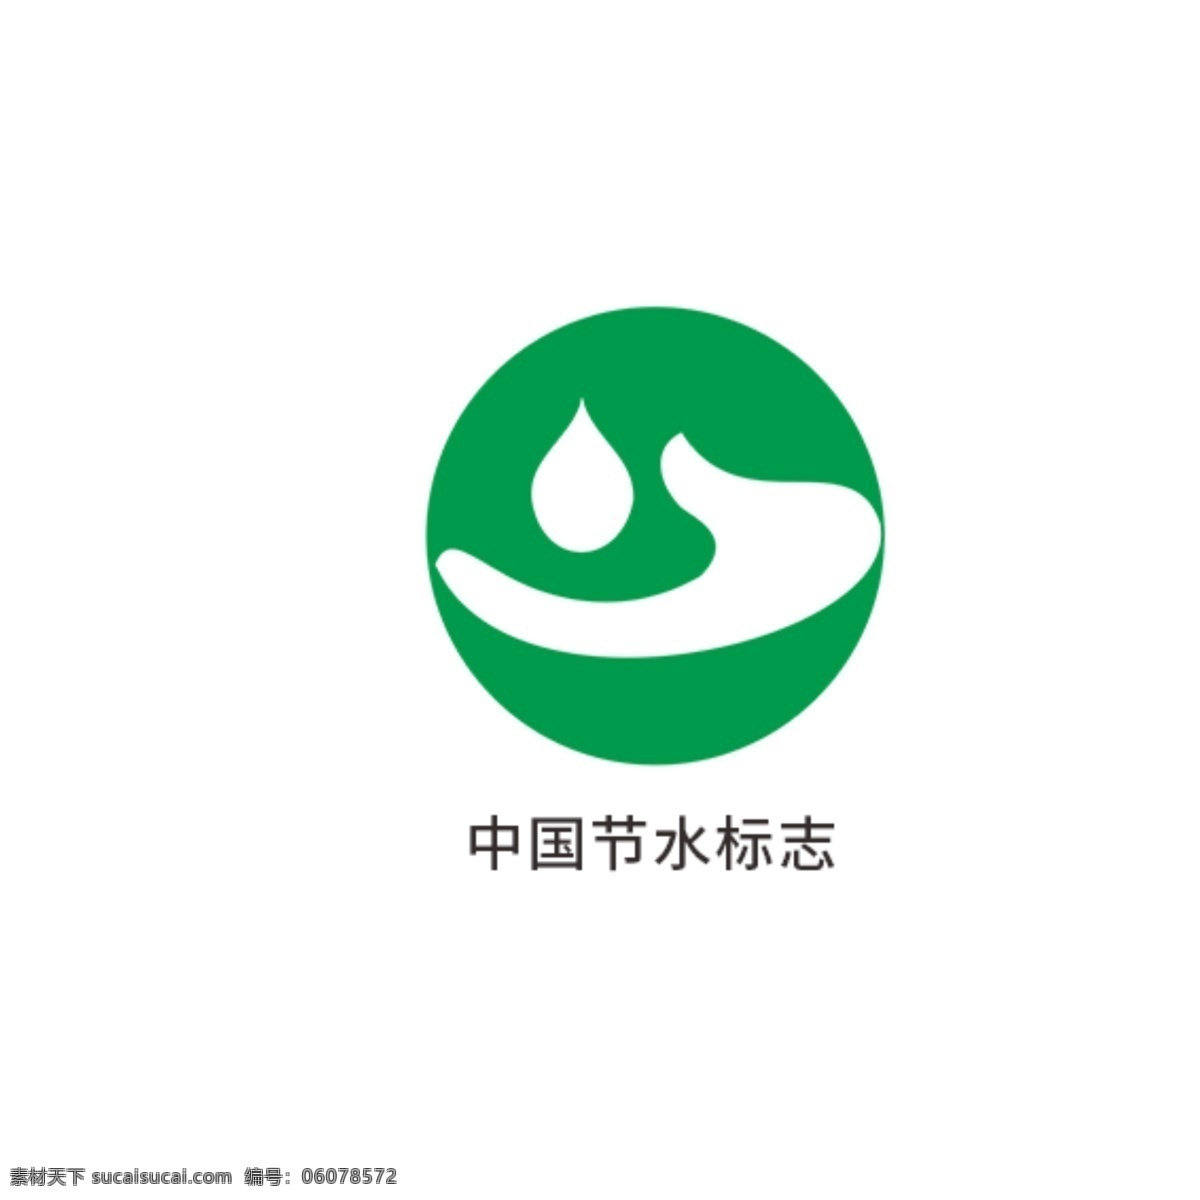 中国节水标志 环保标识 国家抗菌标志 中国卫生 监督标志 有机产品标志 有机食品标志 中国环保 产品认证 无公害农场品 环境标志 中国环境标志